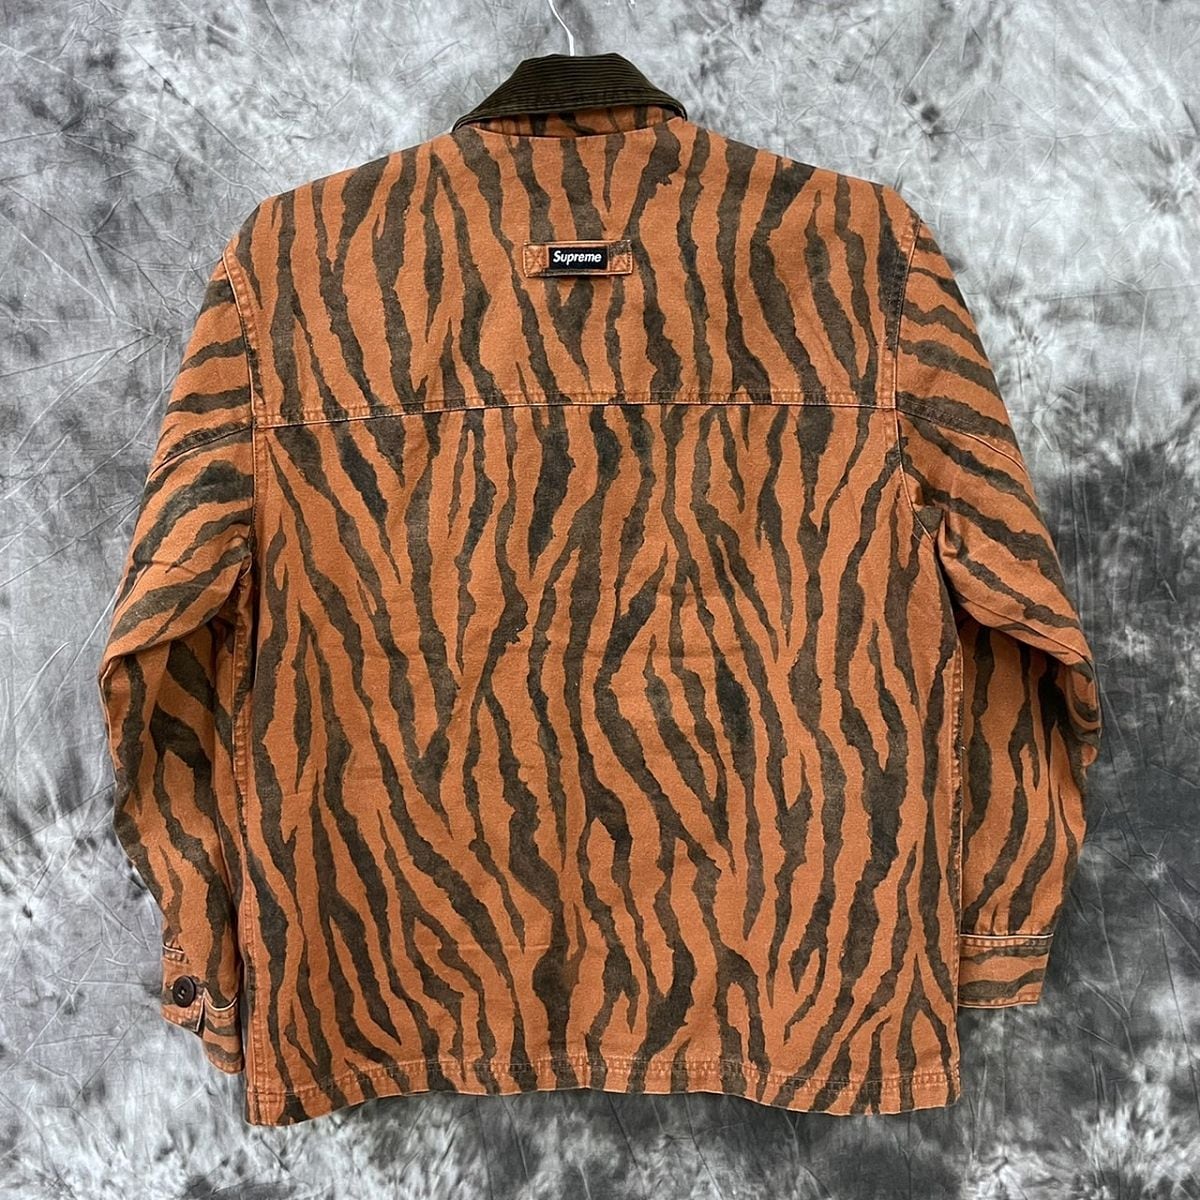 SUPREME/シュプリーム 【21SS】 Barn coat Tiger Stripe/タイガー